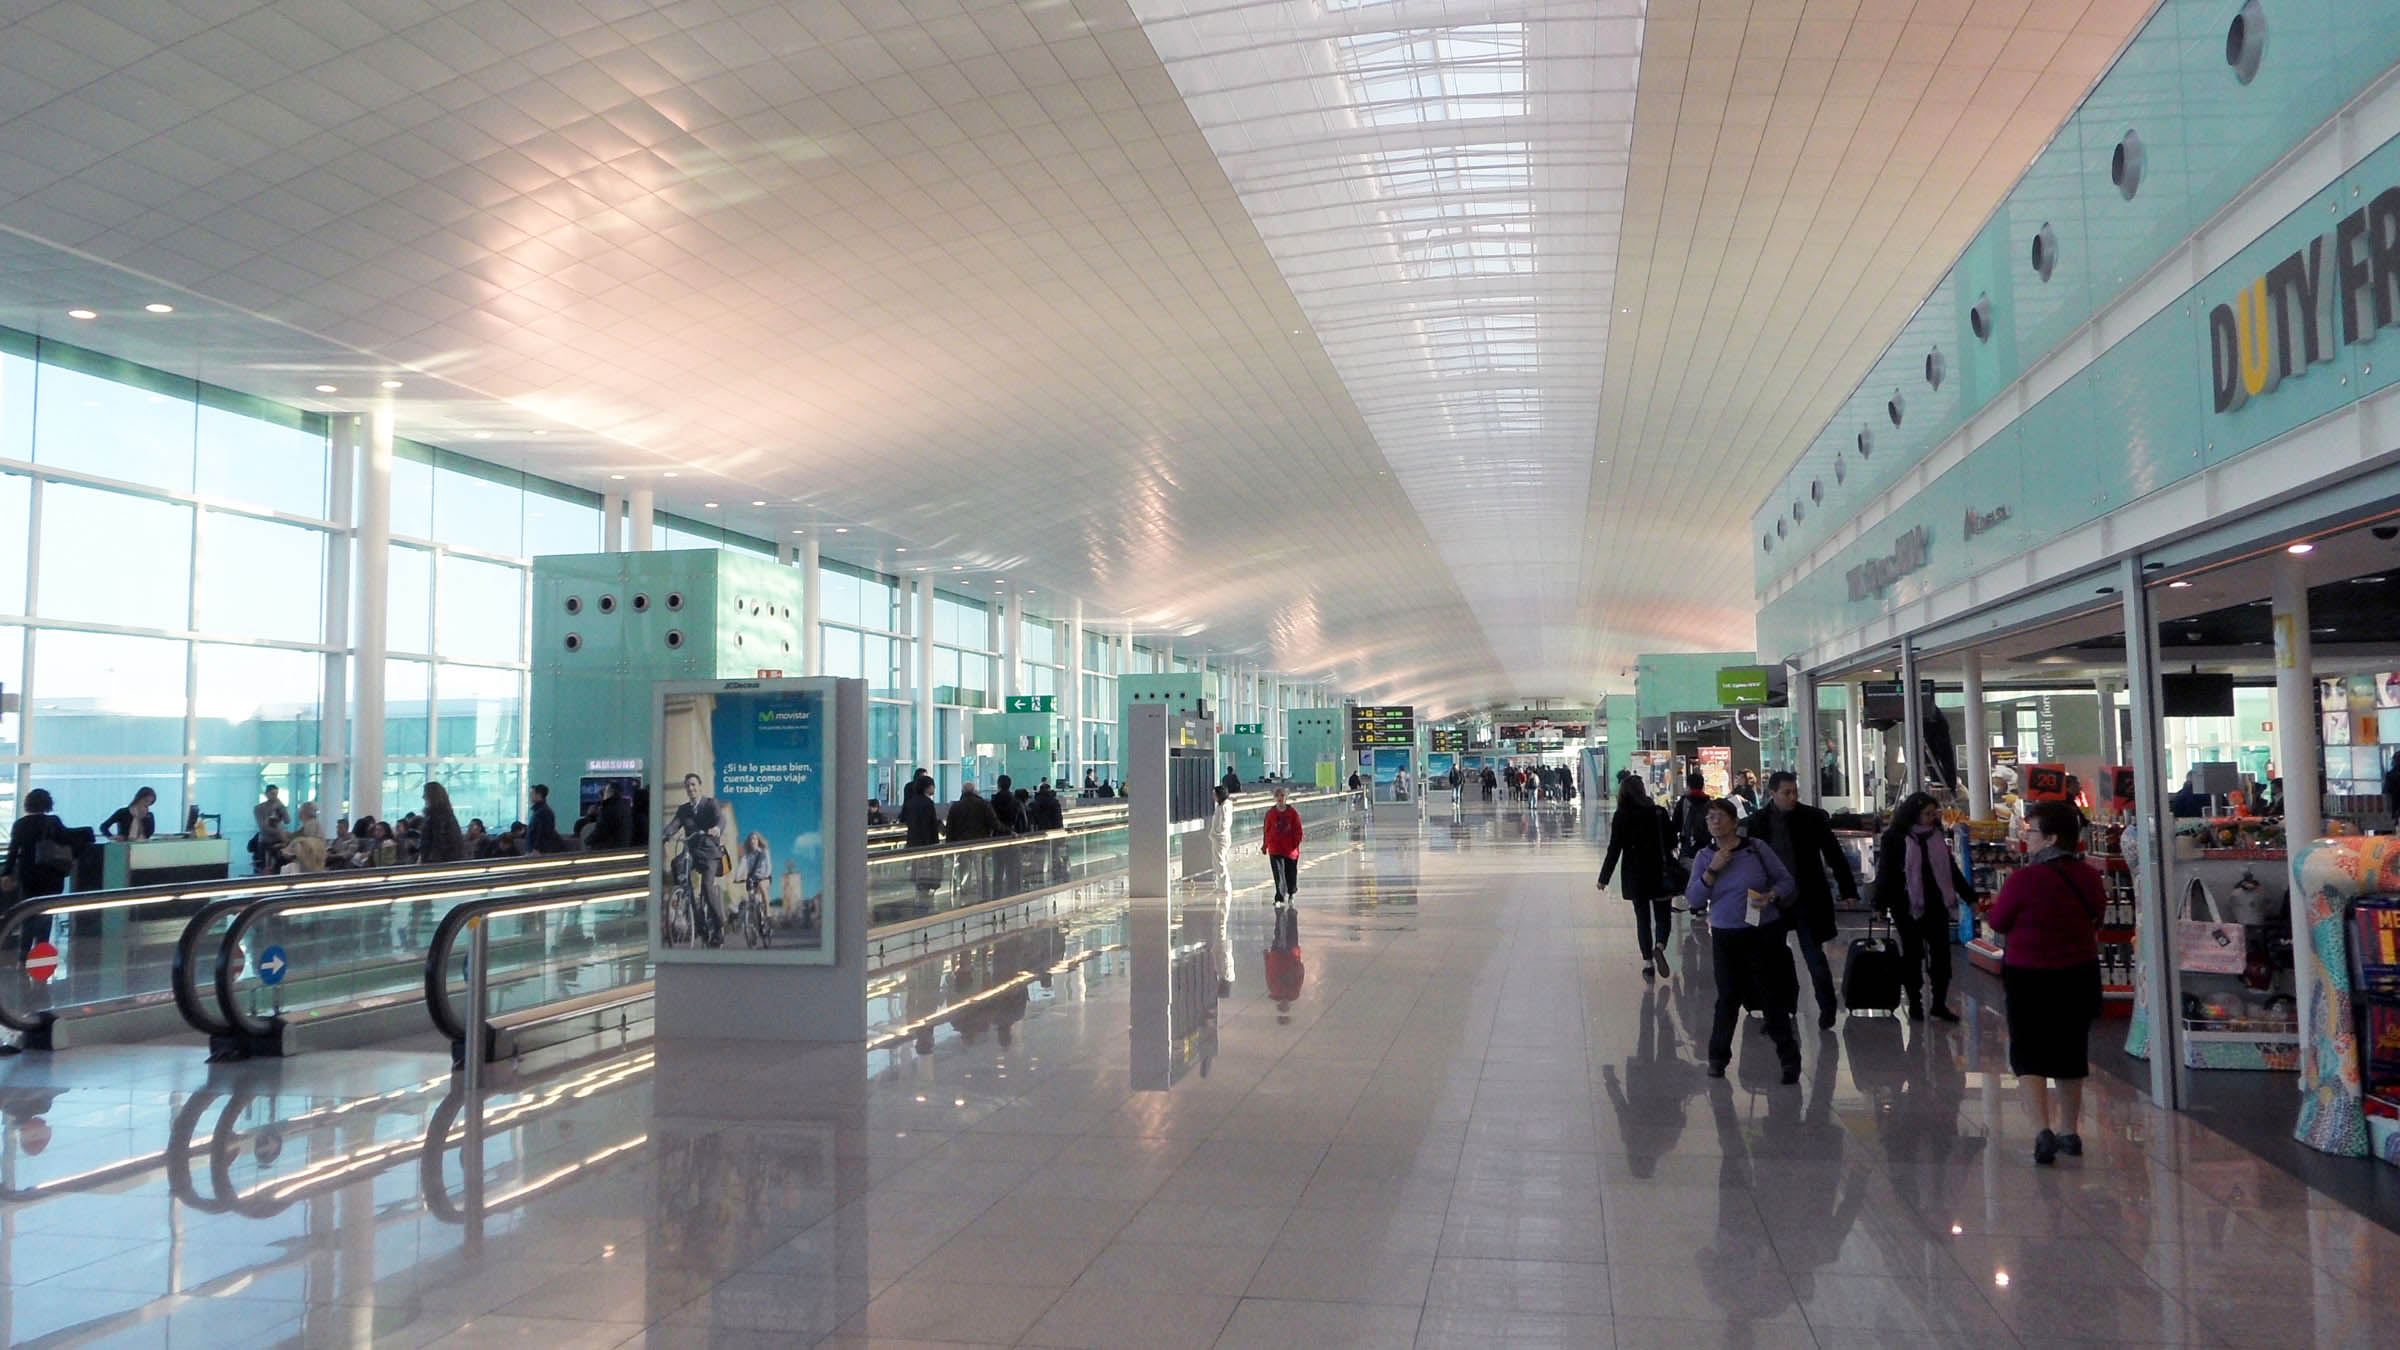 Аэропорт барселона — эль-прат. информация, фото, видео, билеты, онлайн табло.